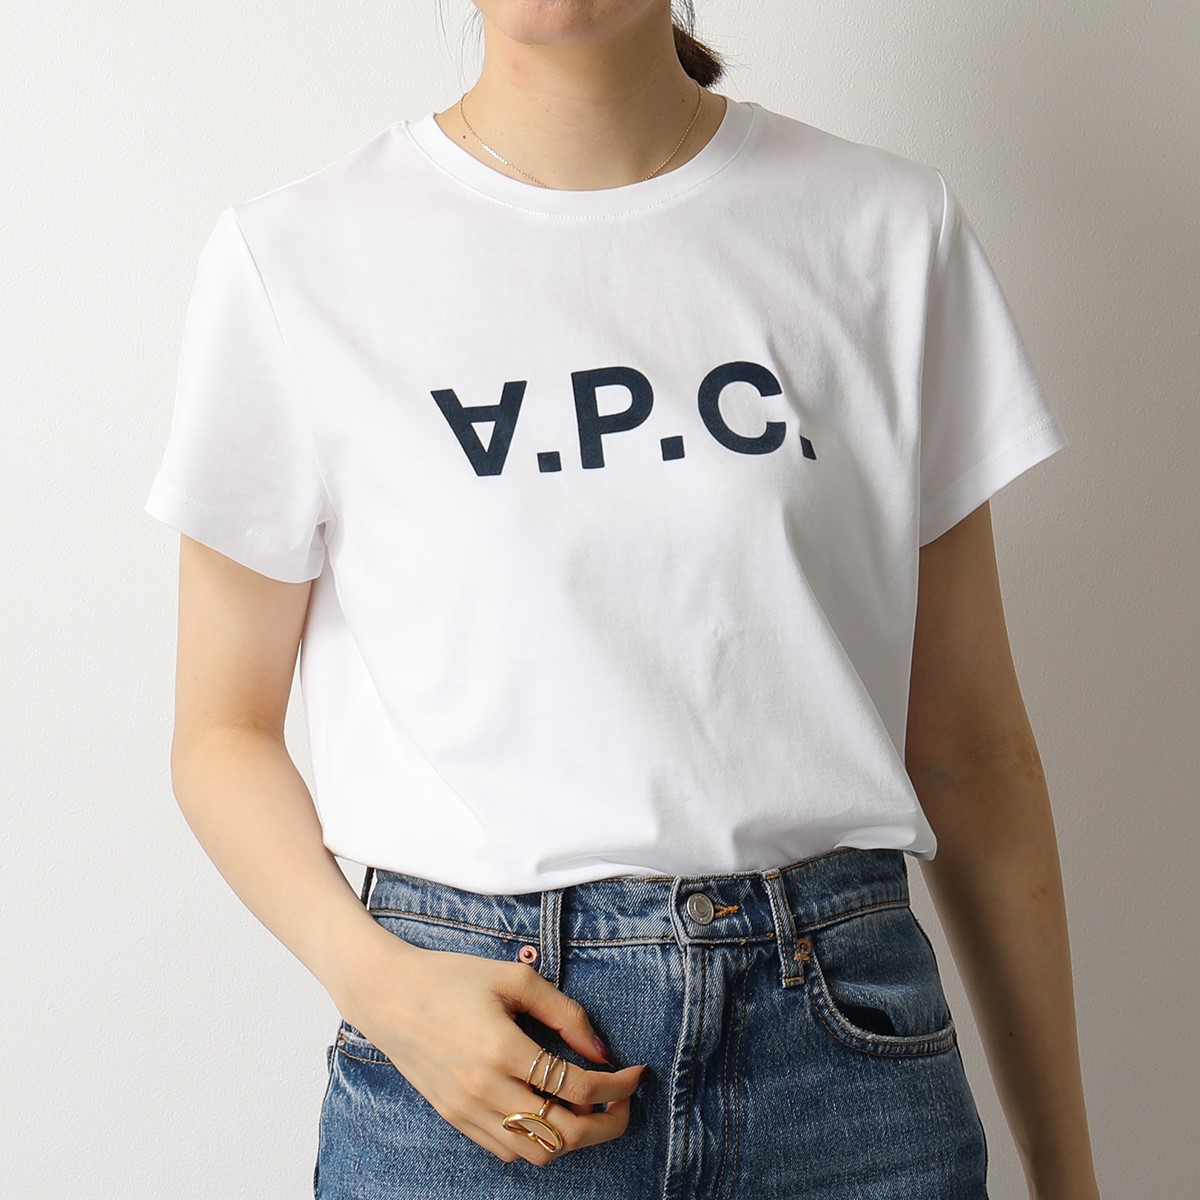 APC A.P.C. アーペーセー COBQX F26588 VPCTシャツ クルーネック 半袖 Tシャツ カットソー ロゴT  DARKNAVY/ホワイト×ネイビー レディース | インポートセレクト musee